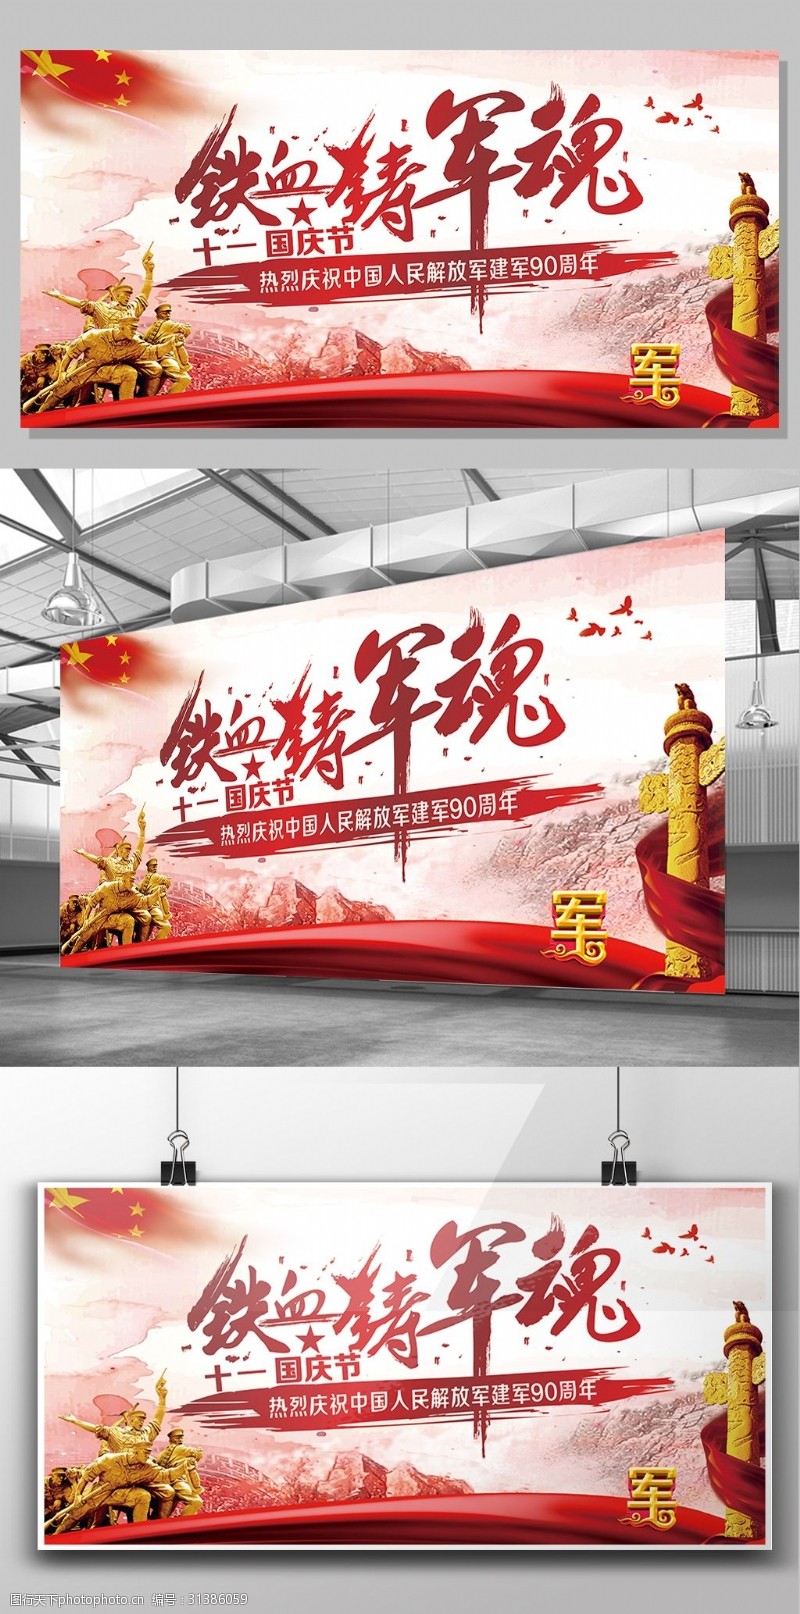 共铸中国梦十一国庆节中国梦铁血铸军魂强国梦党建展板